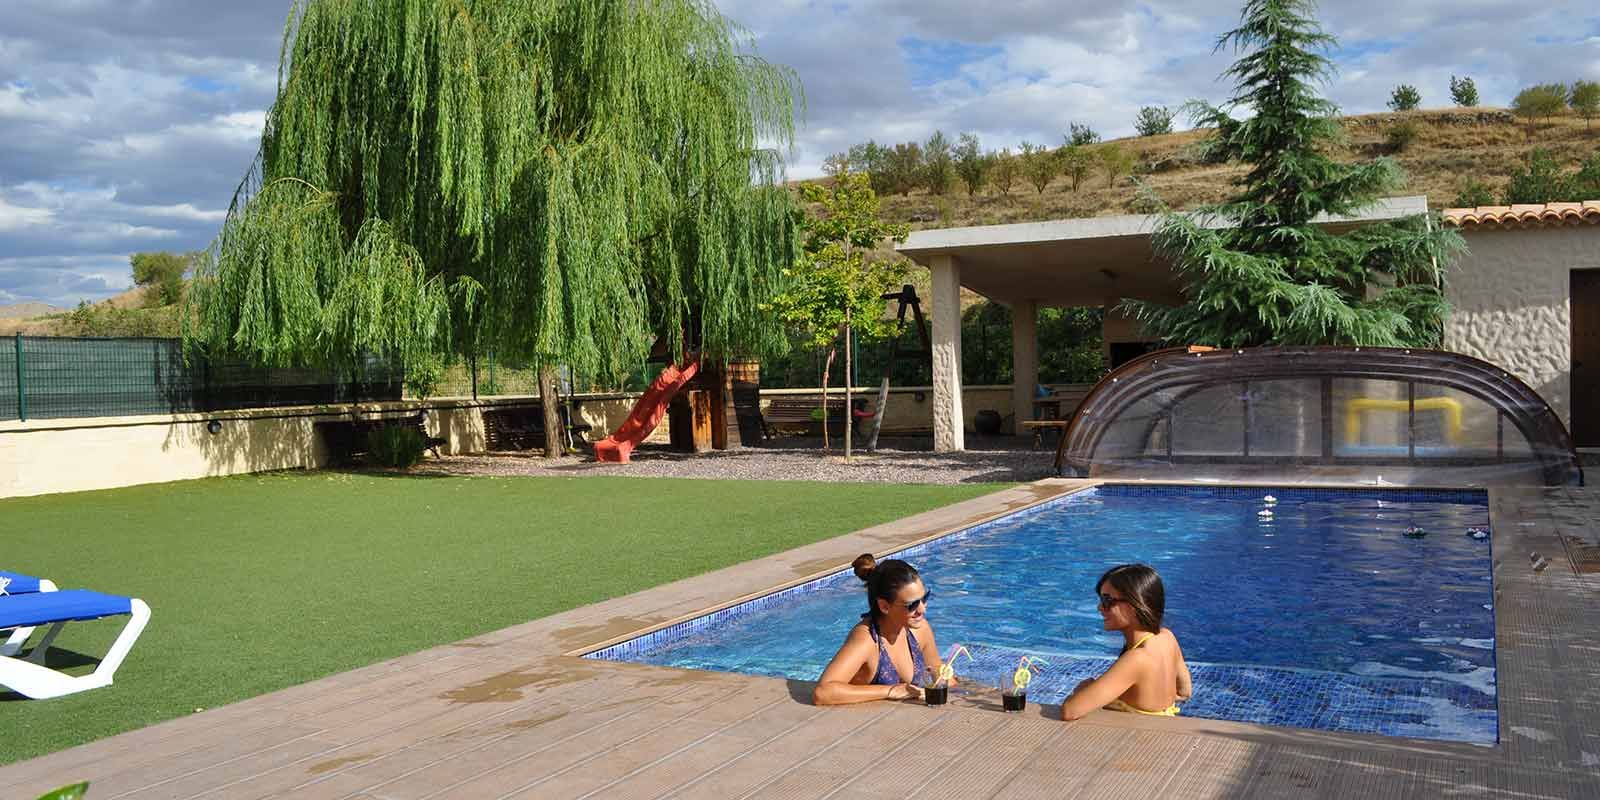 Casa rural en Cuenca piscina cubierta